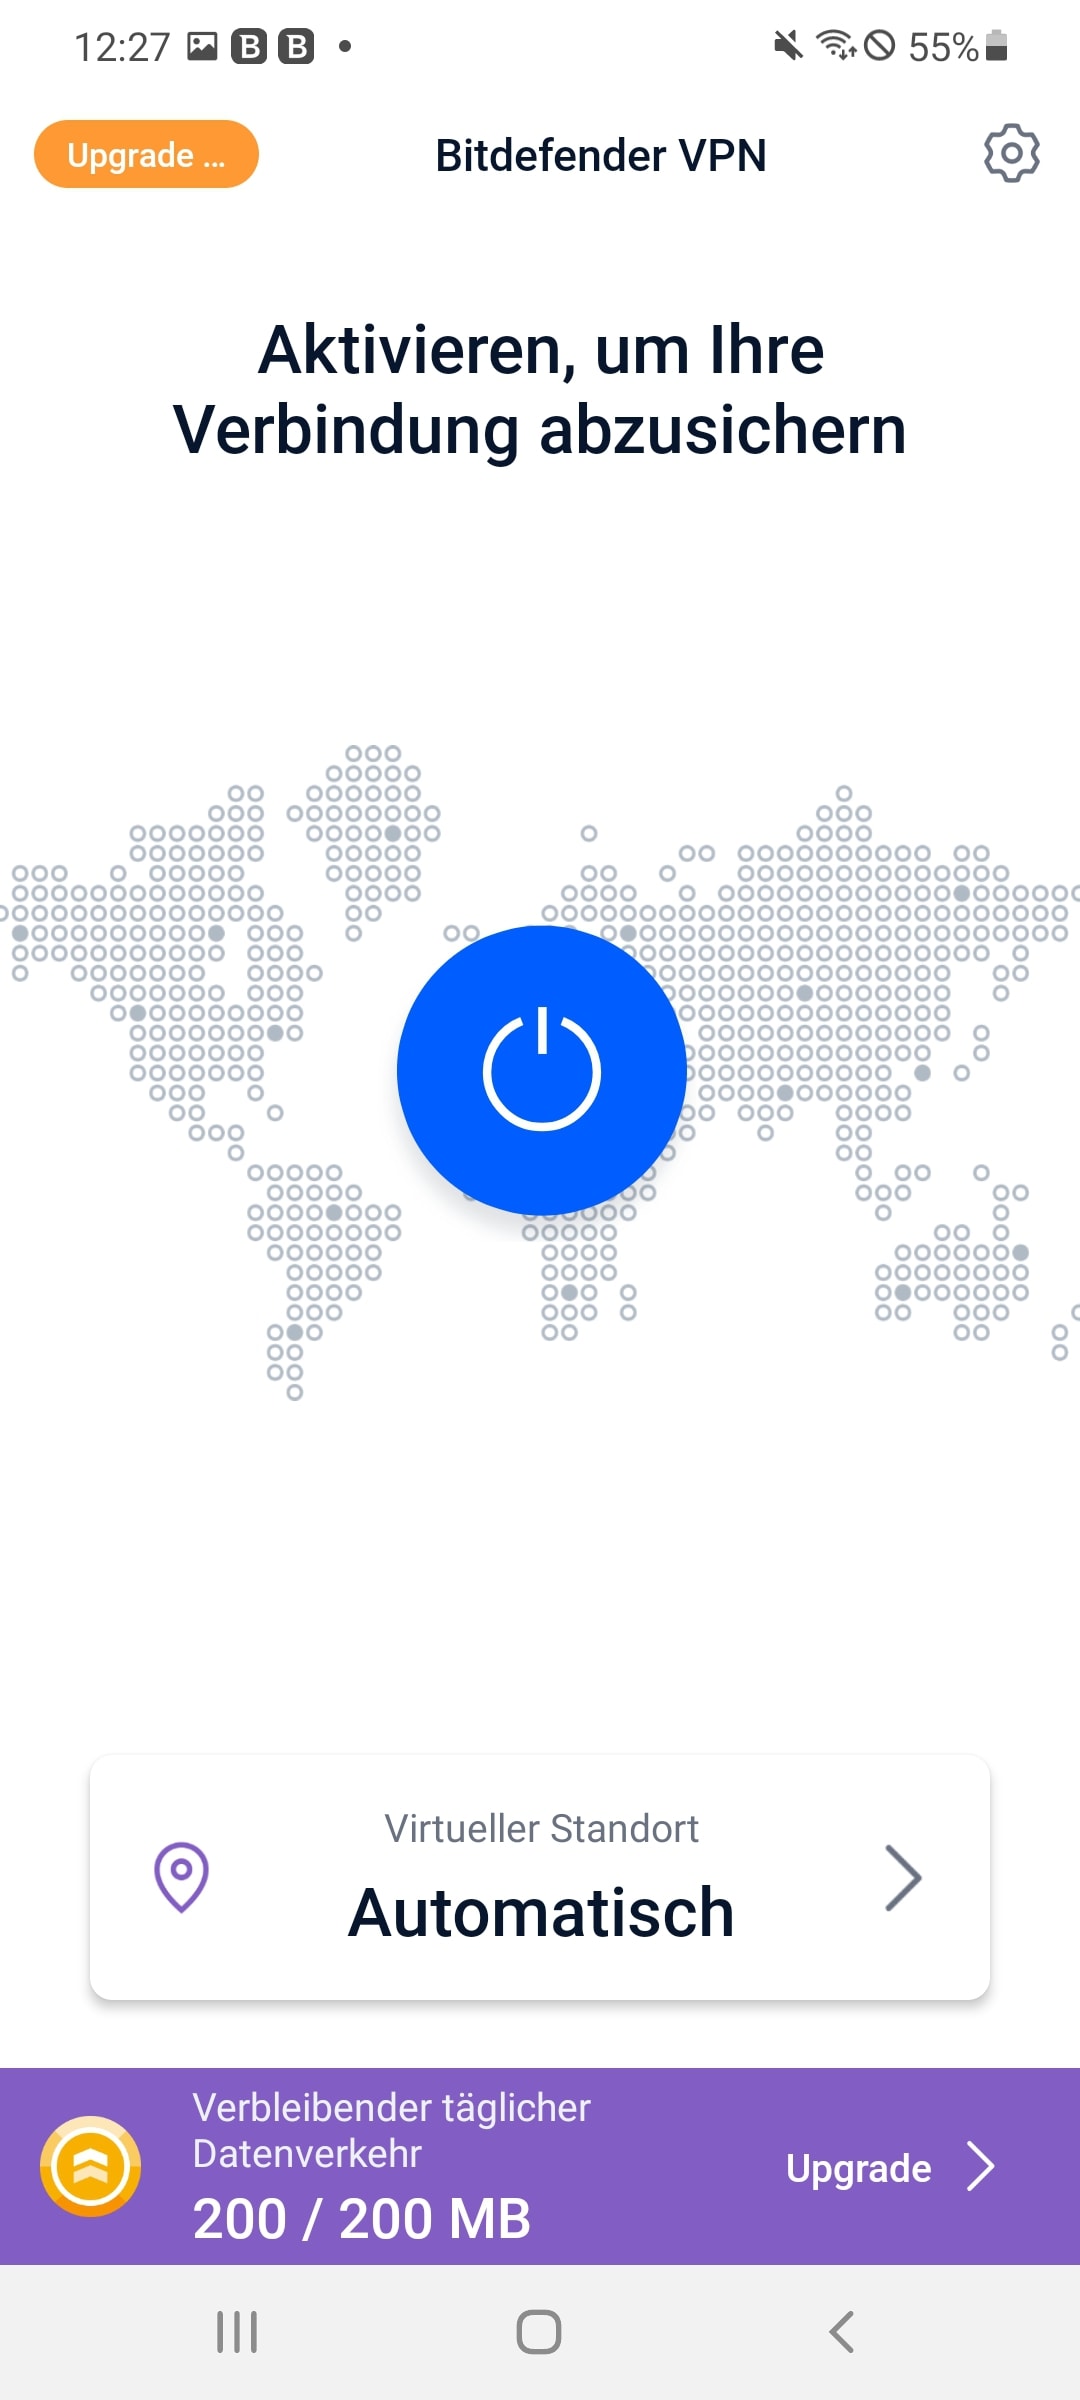 Mit dem großen blauen Knopf aktivieren Sie VPN und sind dann sicher verbunden.